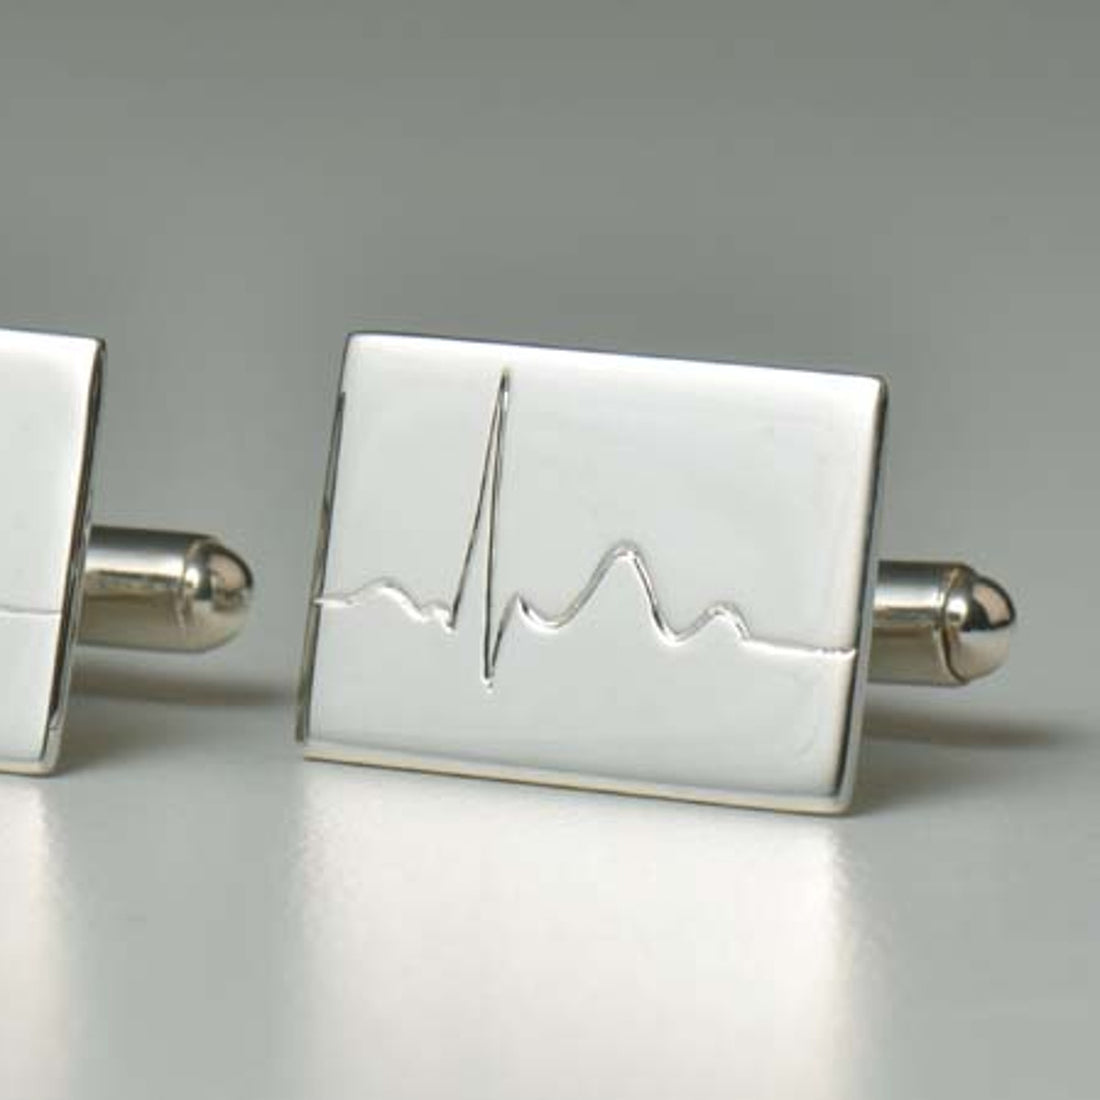 Silver cufflinks handmade for a heart surgeon.